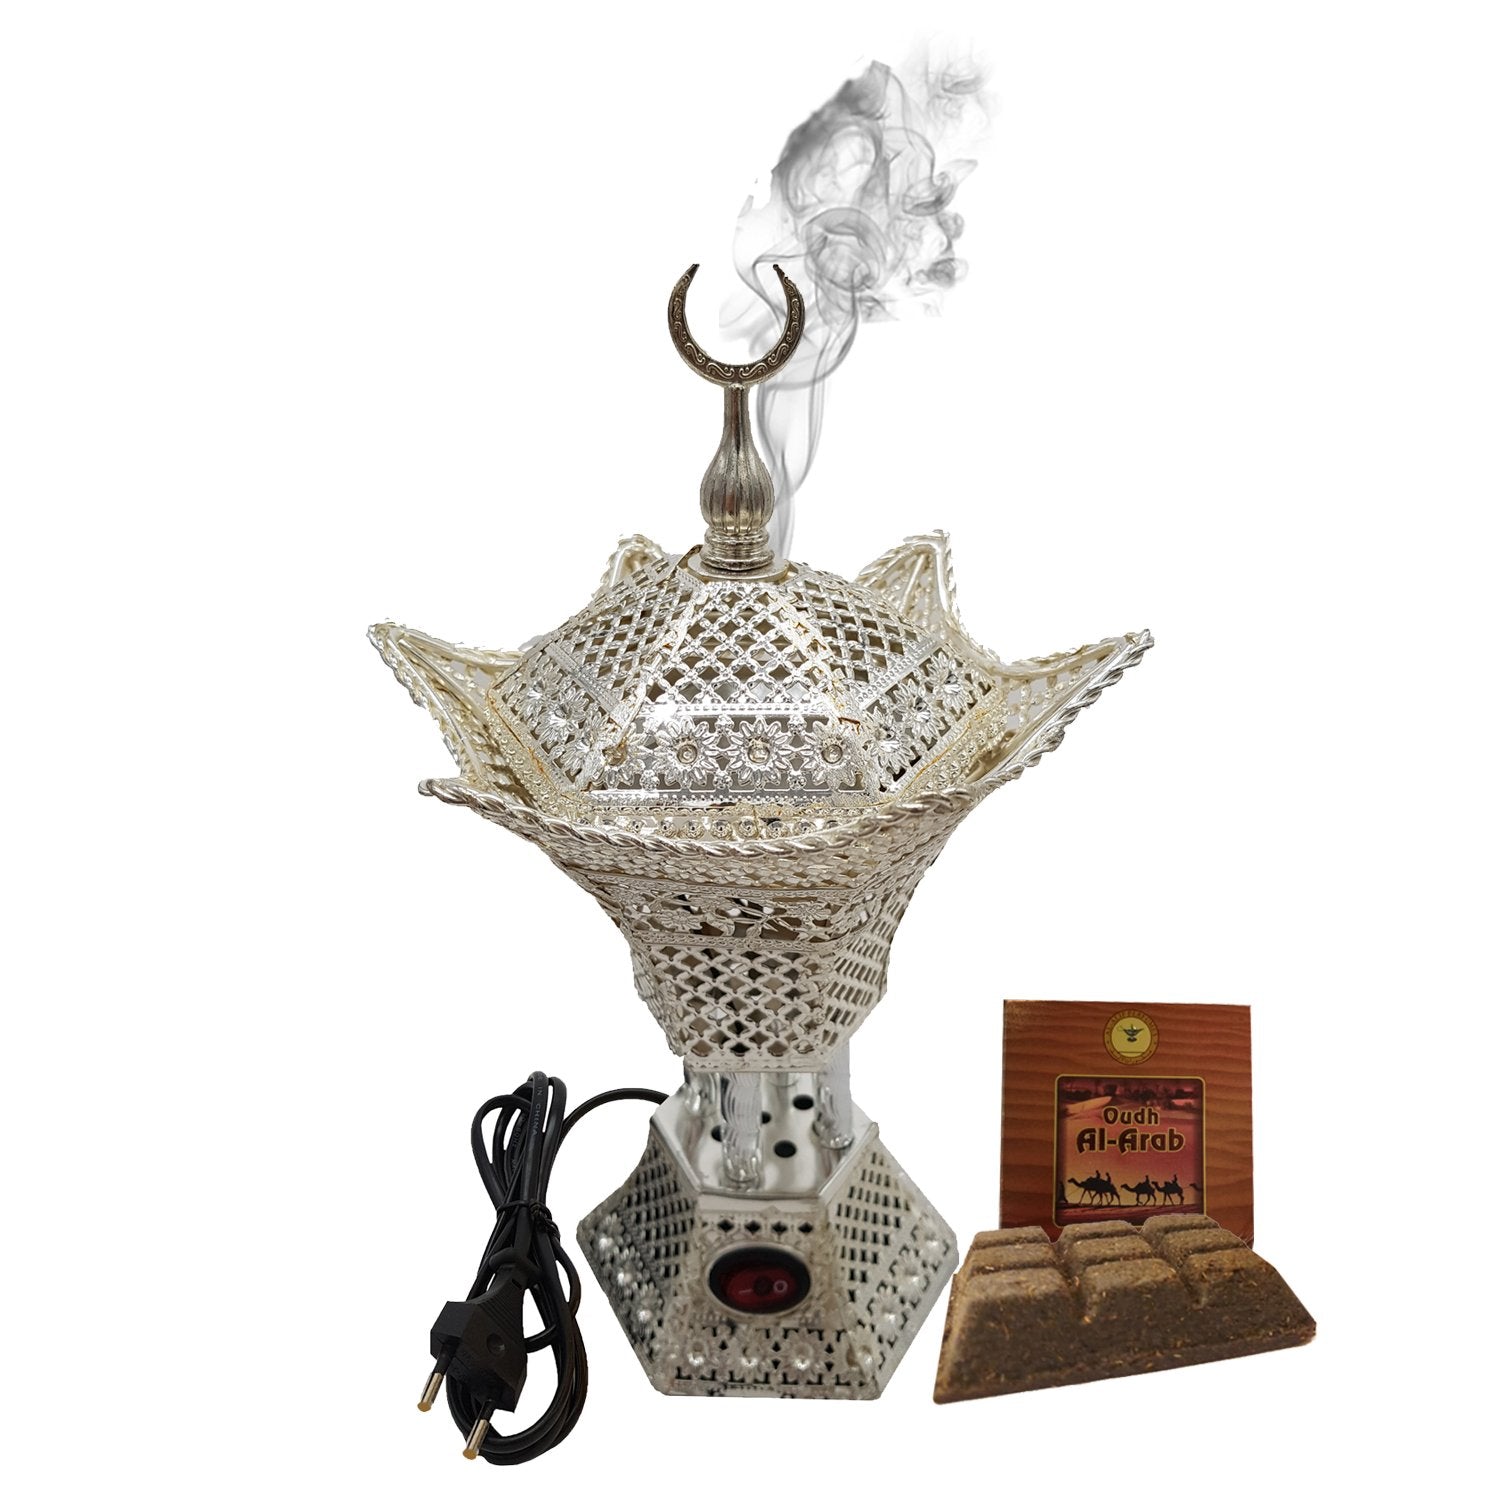 Electrical Bakhoor Burner & 50g Fragrance Paste - Silver